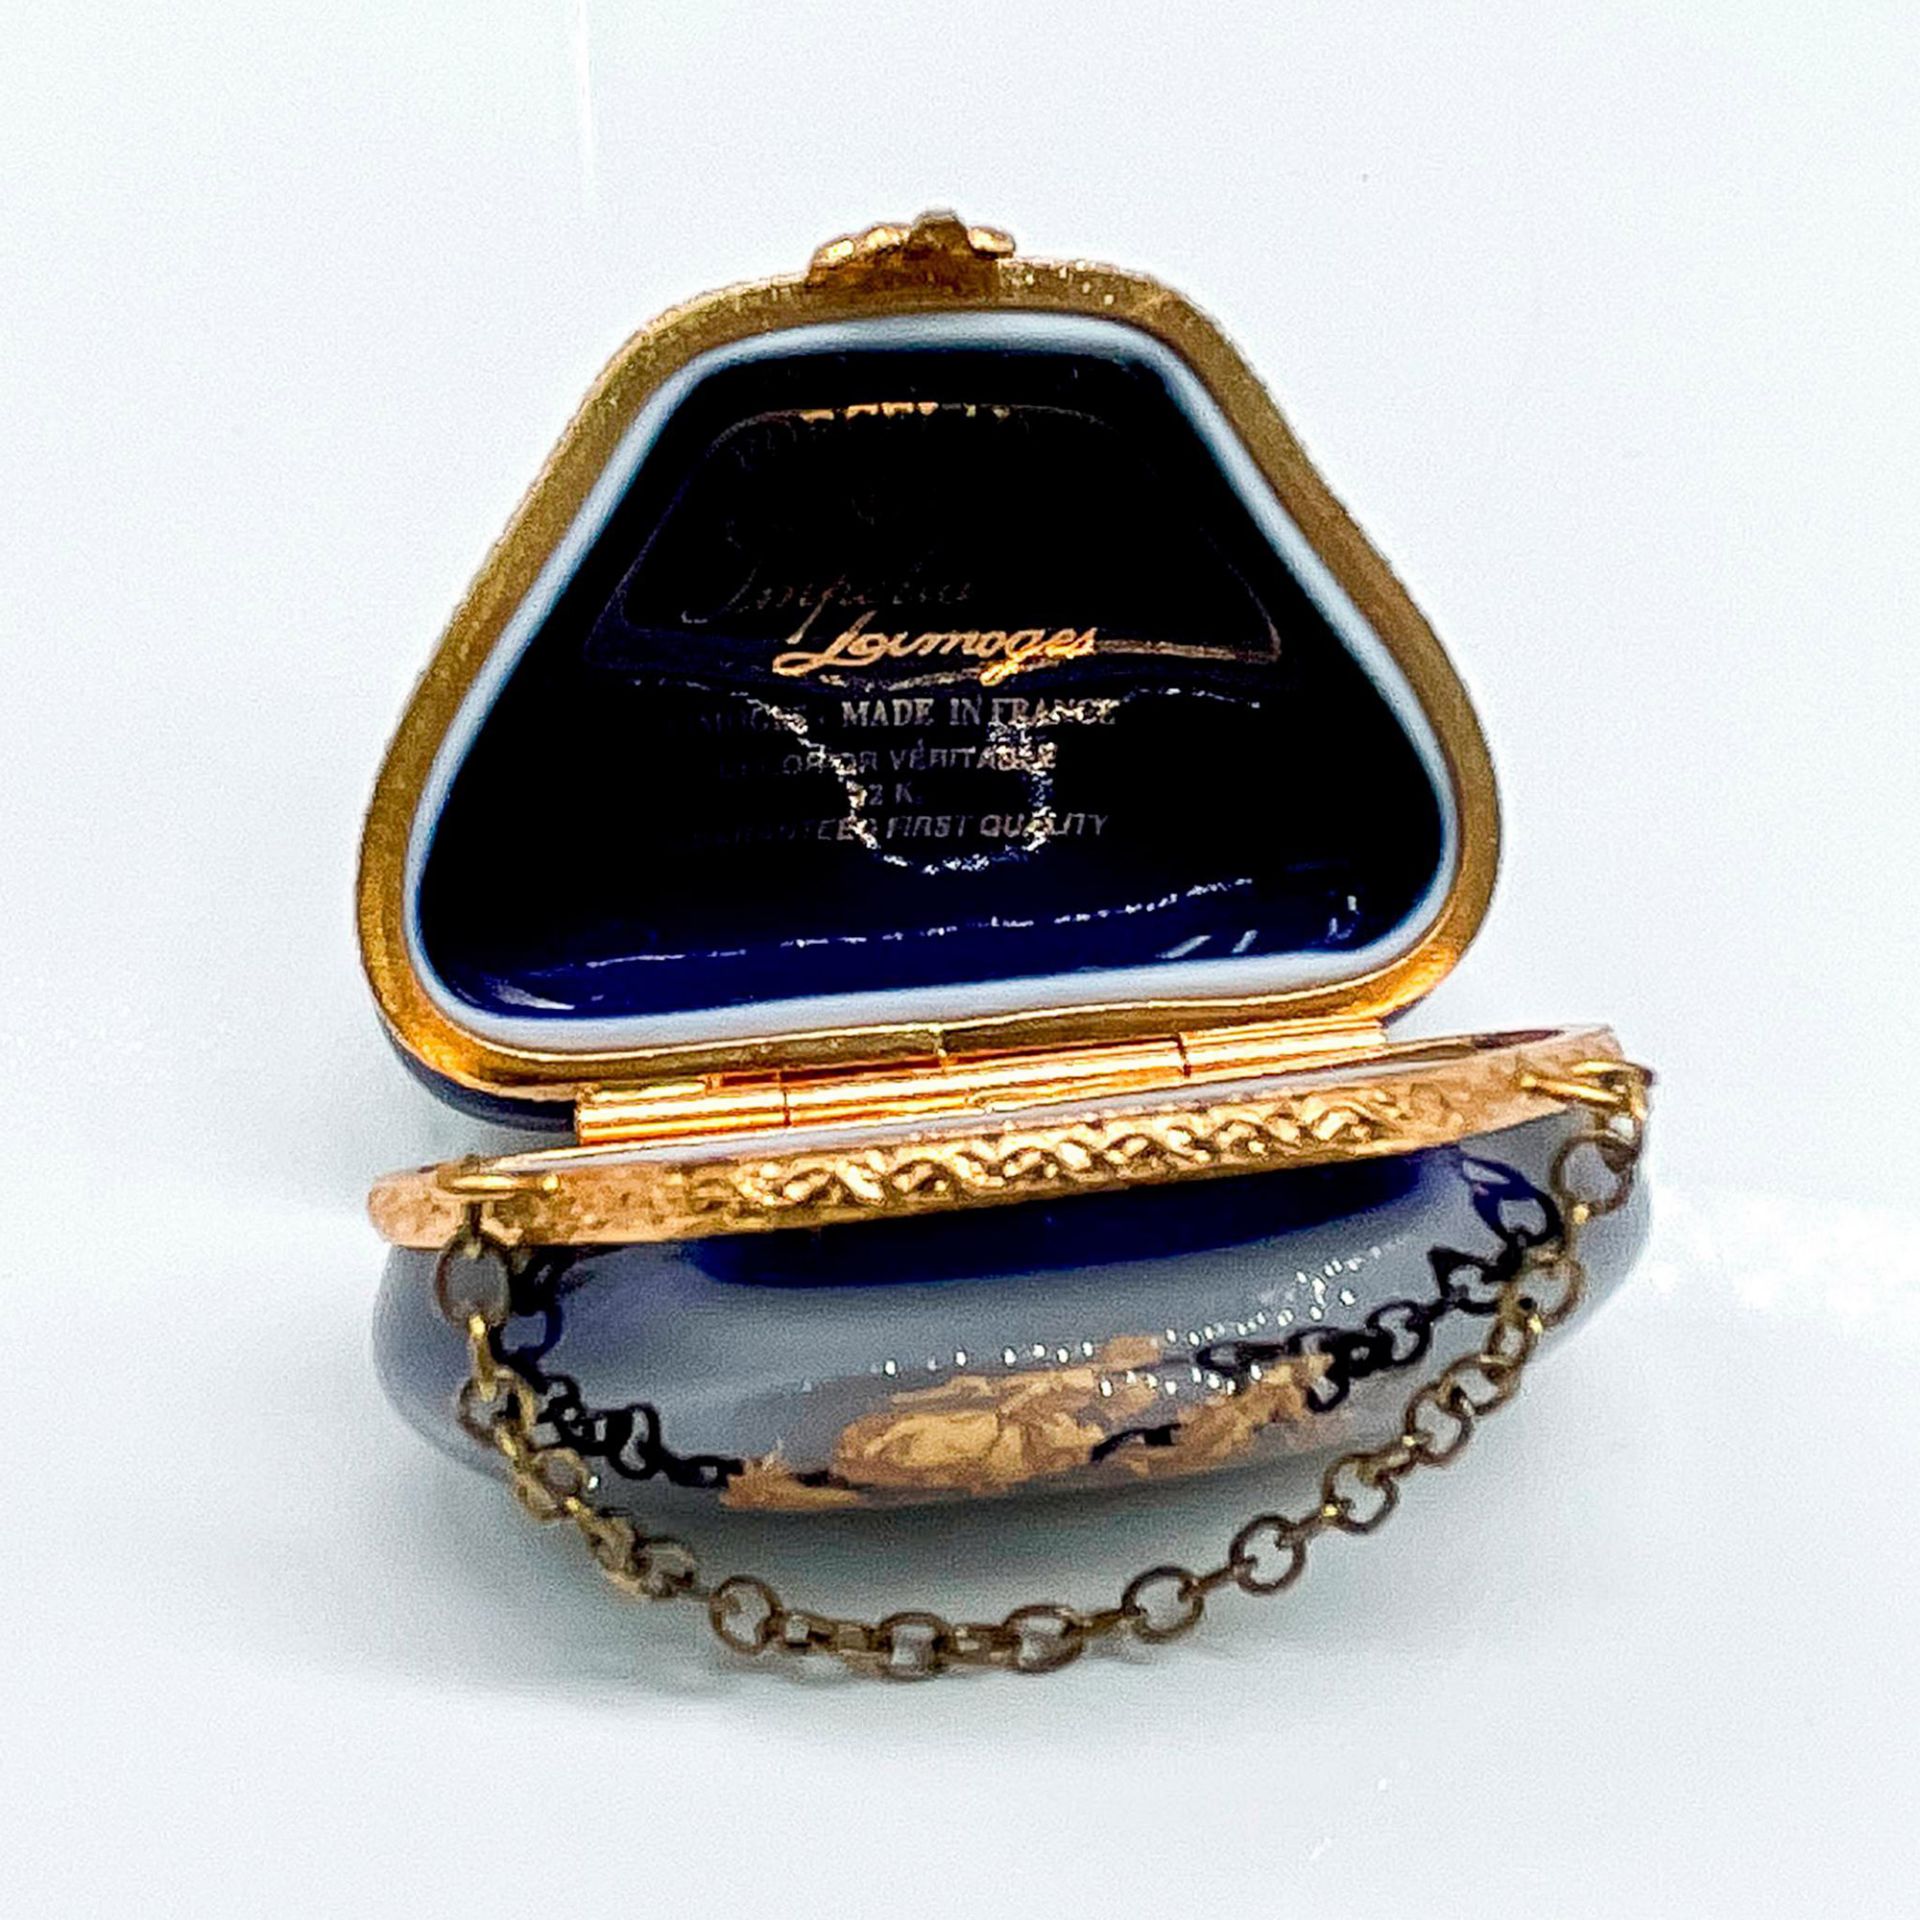 Imperia Limoges Porcelain Trinket Box - Image 3 of 3